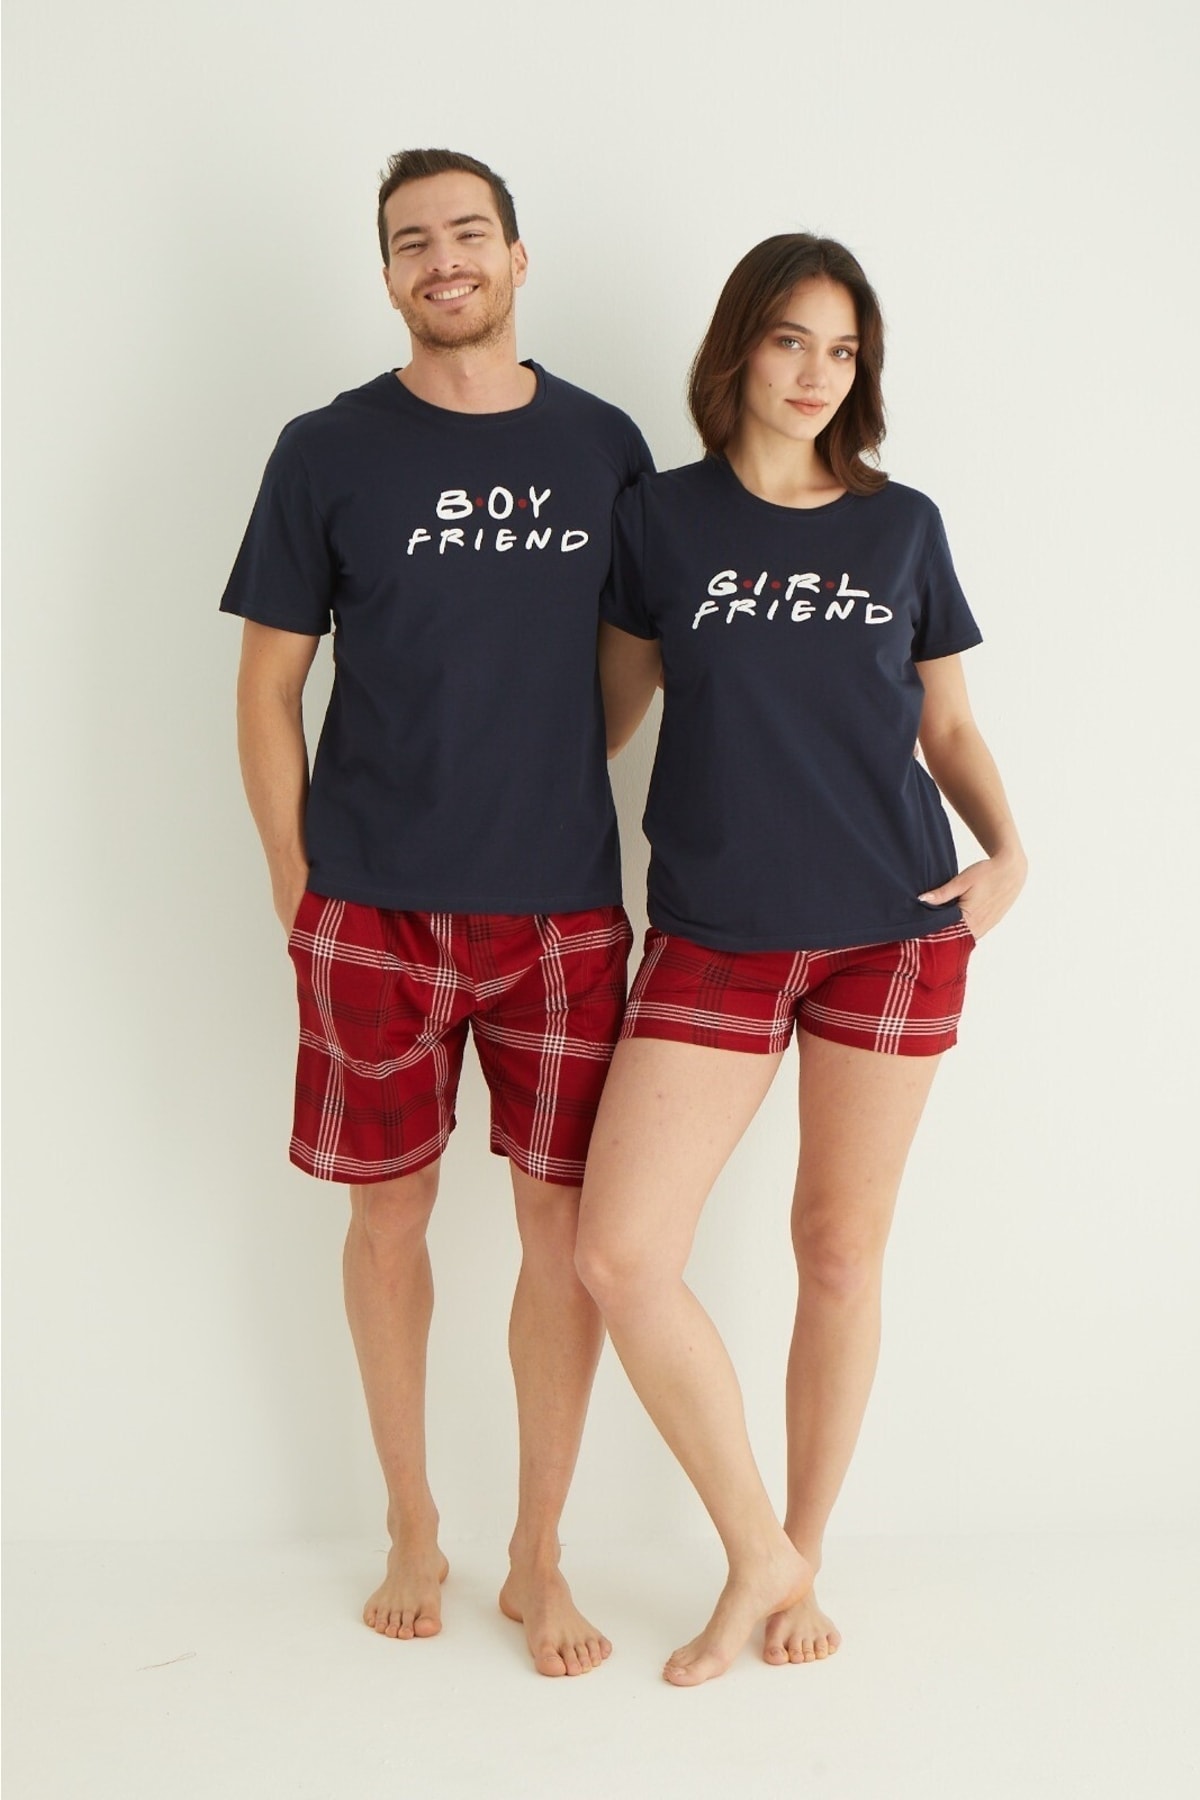 Pijamoni Kadın Eşli Şortlu Pijama Takımı (kadın Ve Erkek Ayrı Ayrı Satılmaktadır)